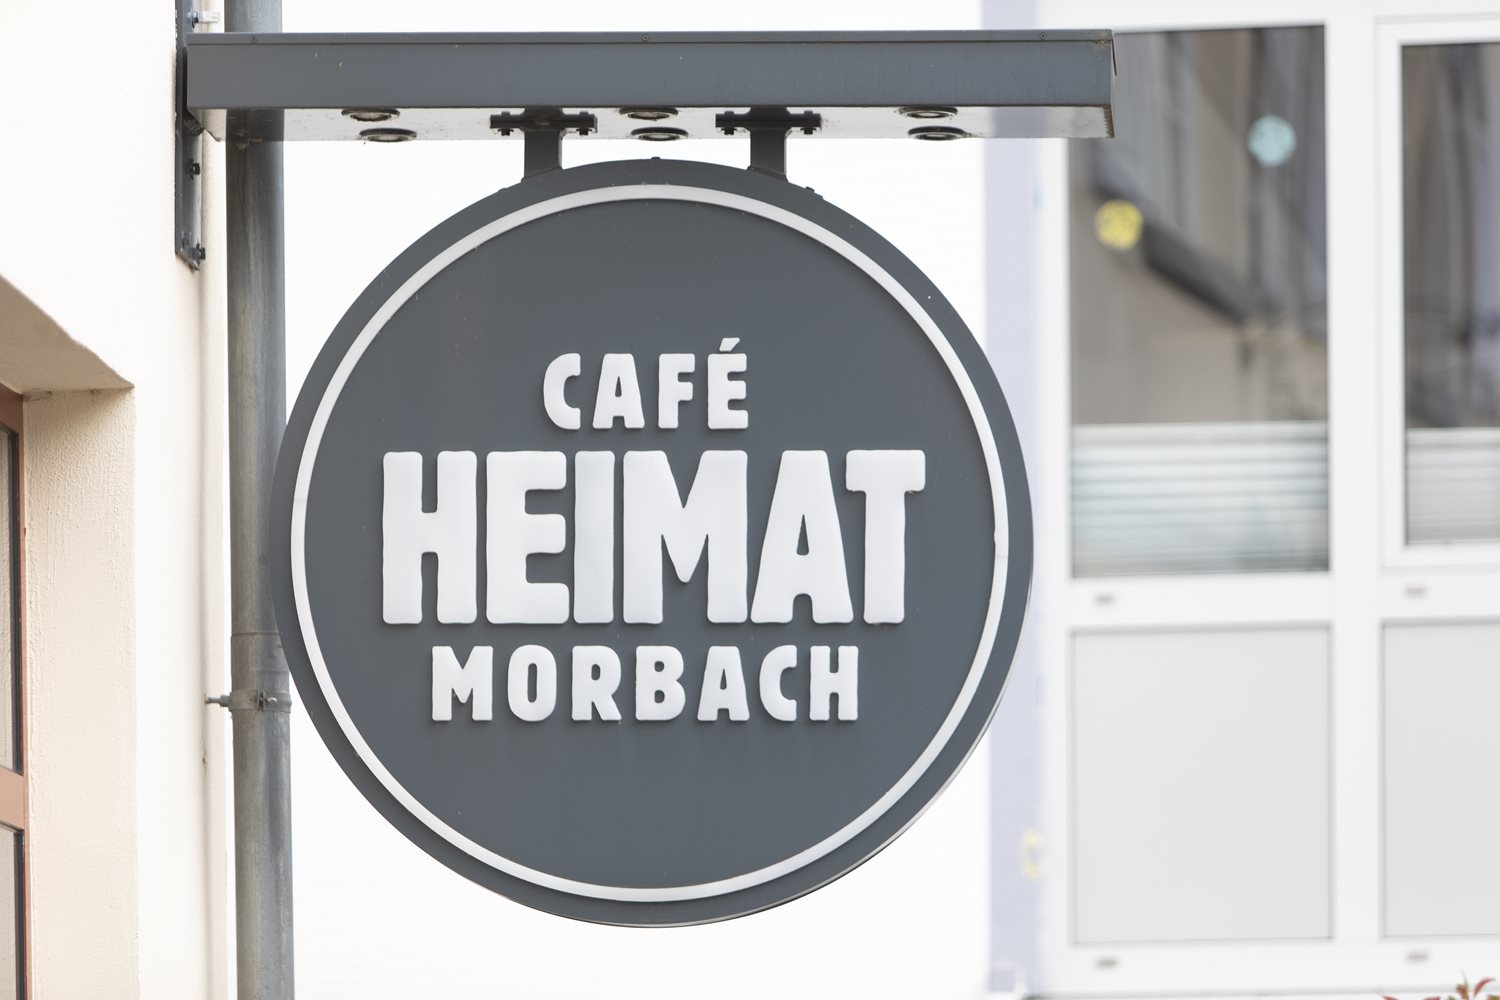 Café Heimat